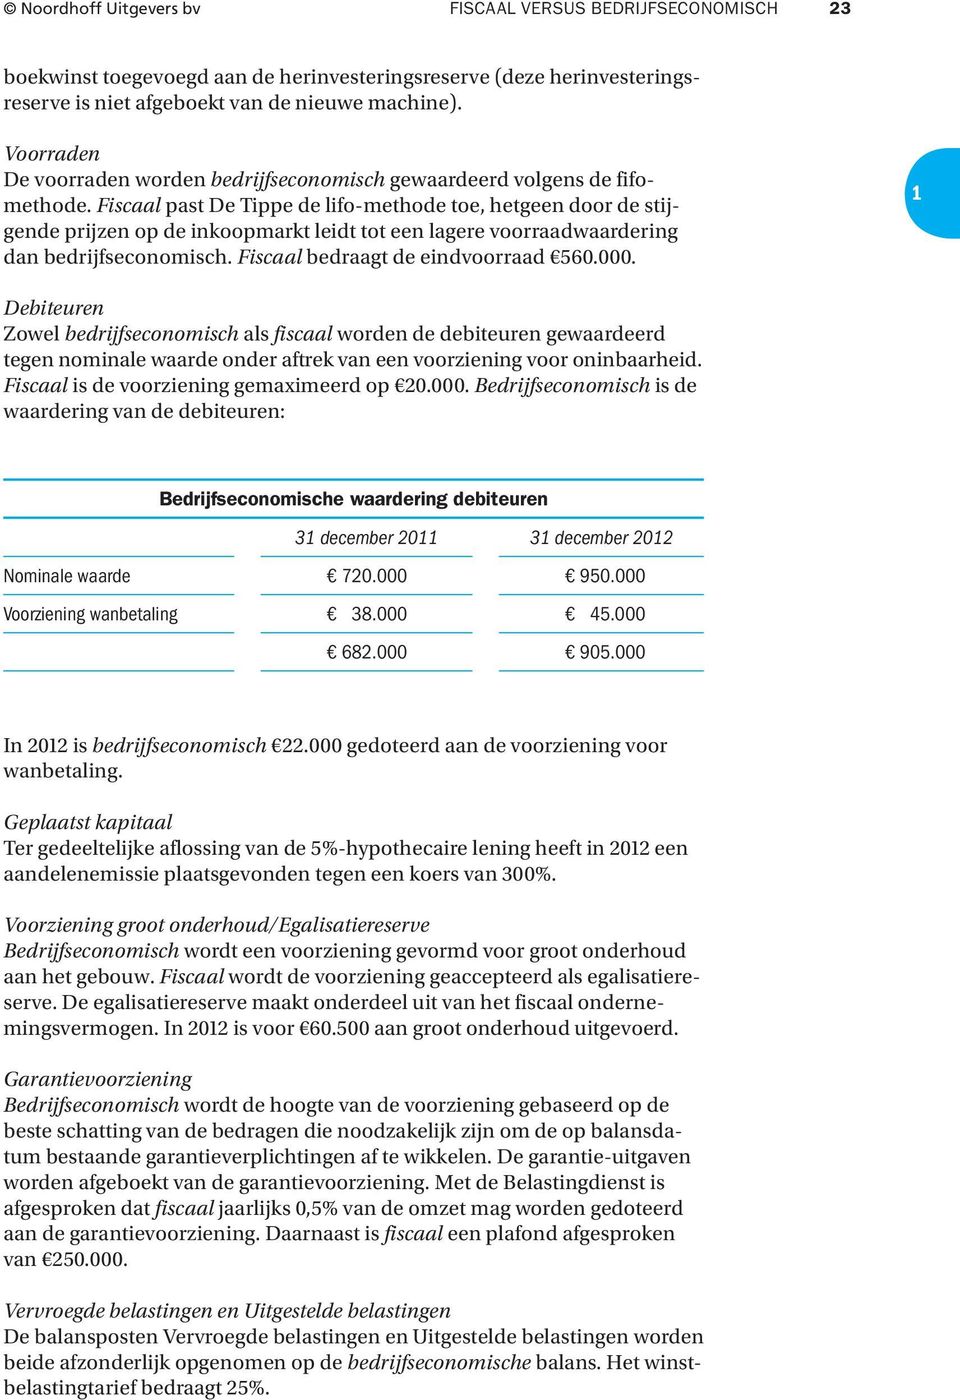 Fiscaal past De Tippe de lifo-methode toe, hetgeen door de stijgende prijzen op de inkoopmarkt leidt tot een lagere voorraadwaardering dan bedrijfseconomisch. Fiscaal bedraagt de eindvoorraad 560.000.